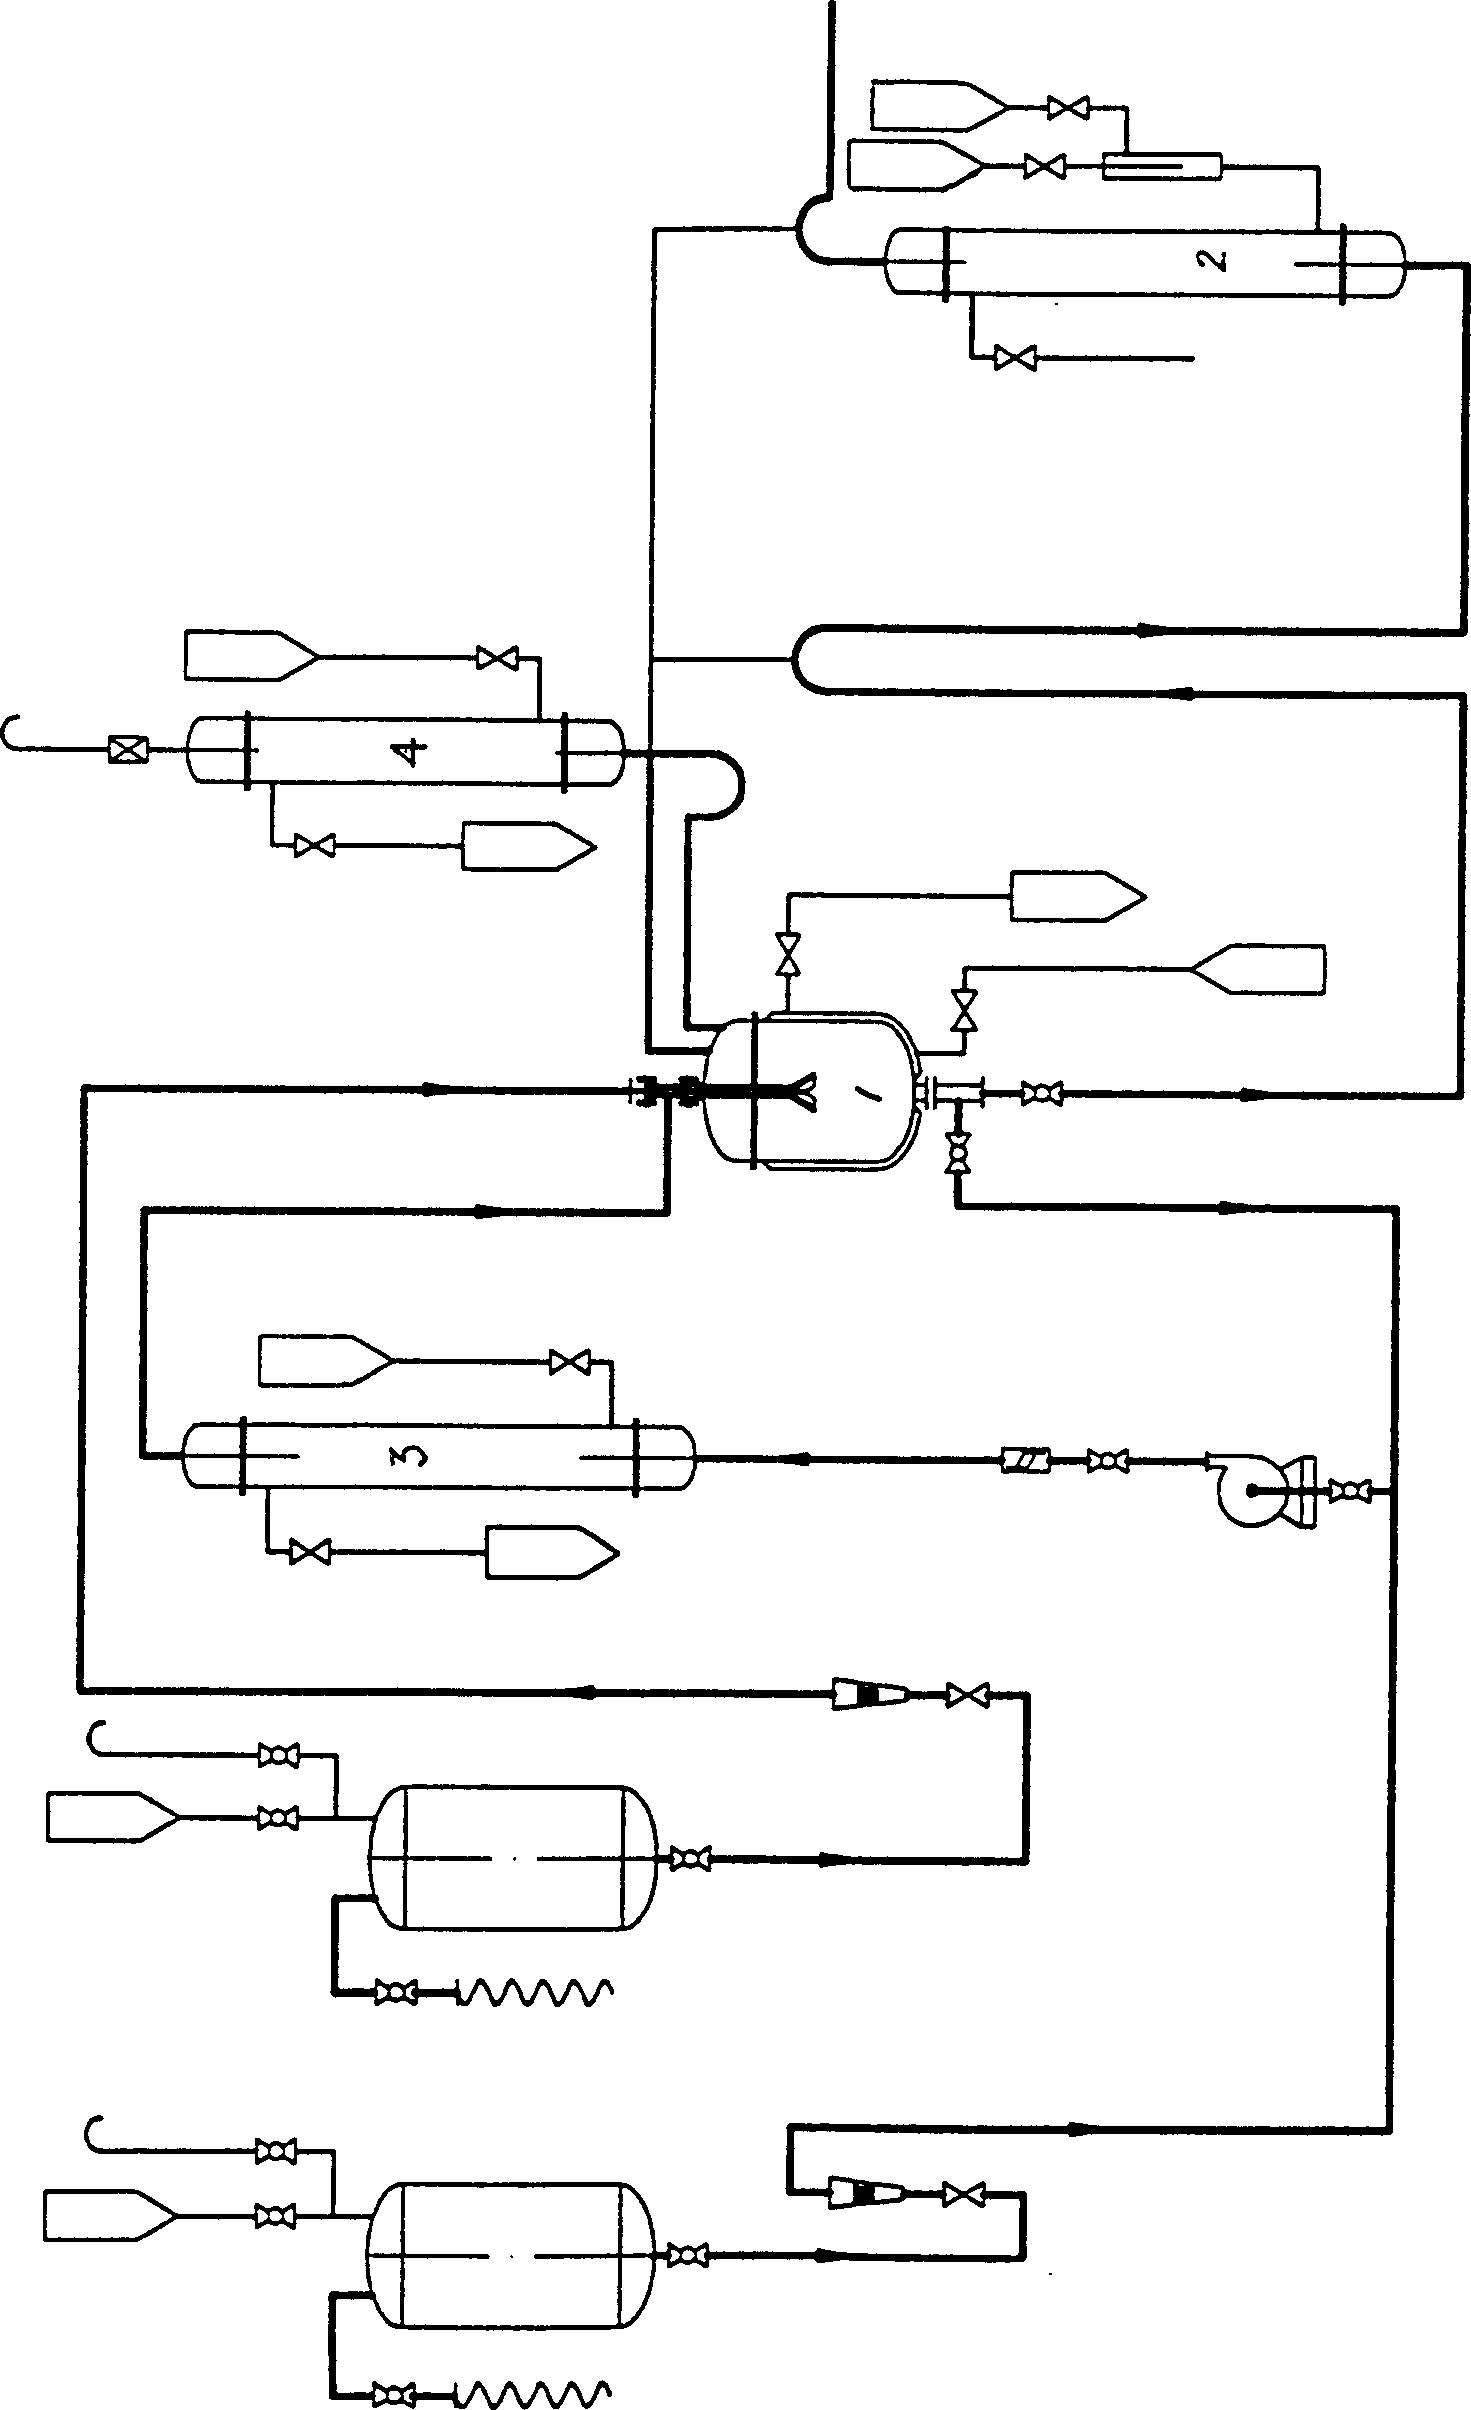 Dedevap continuous production method